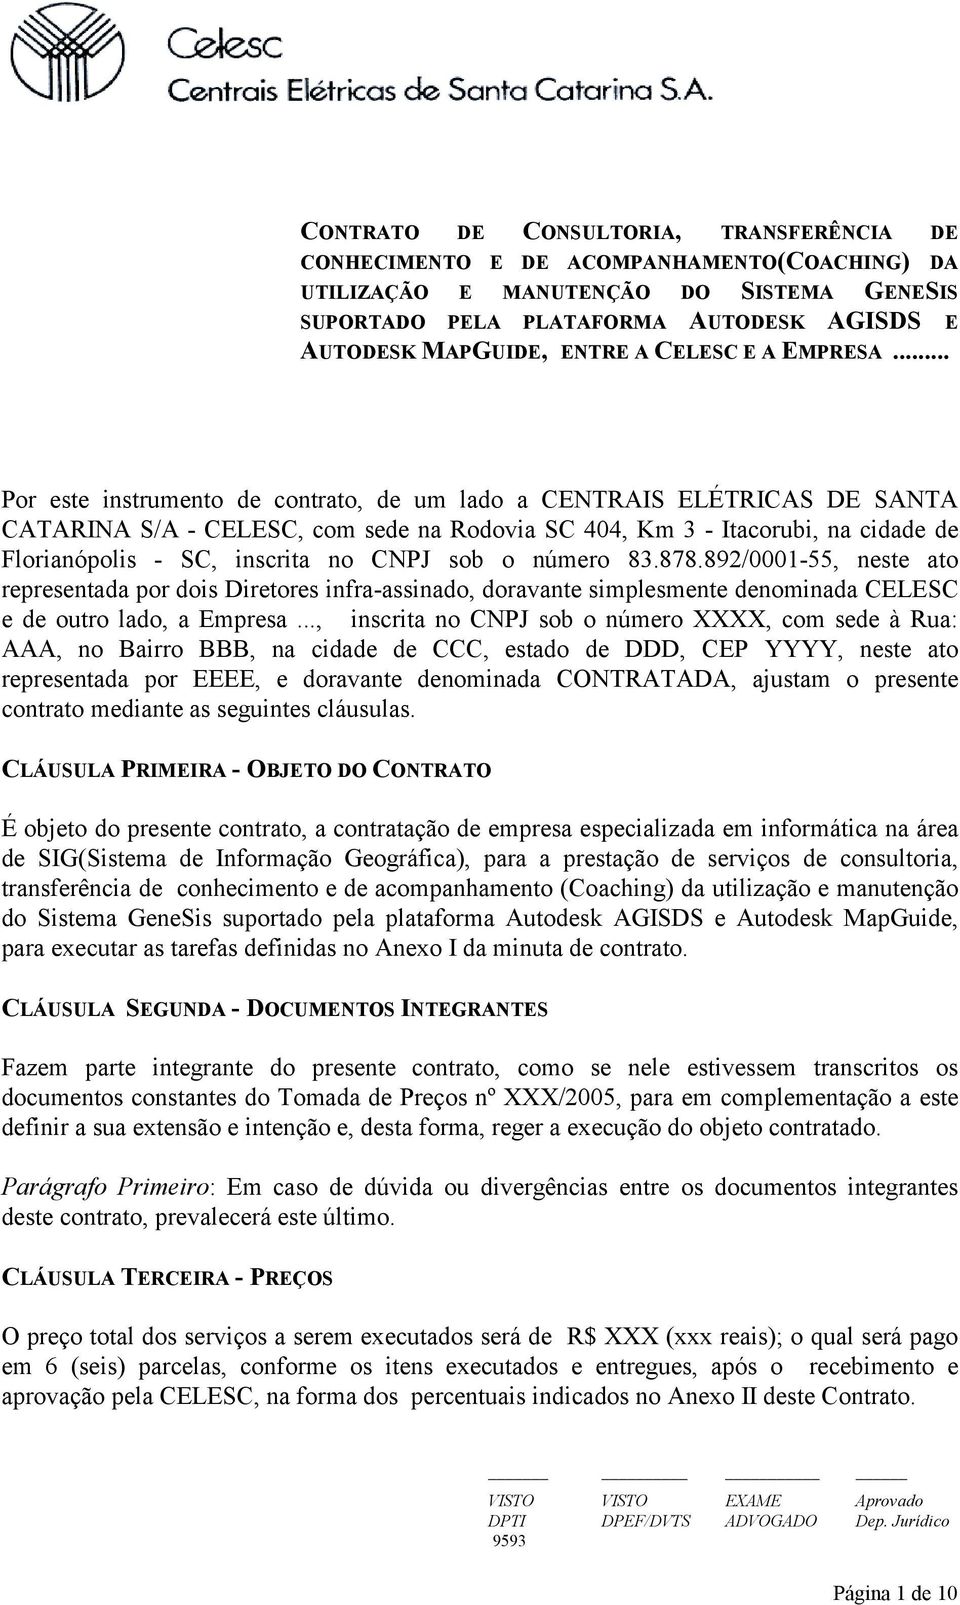 .. Por este instrumento de contrato, de um lado a CENTRAIS ELÉTRICAS DE SANTA CATARINA S/A - CELESC, com sede na Rodovia SC 404, Km 3 - Itacorubi, na cidade de Florianópolis - SC, inscrita no CNPJ